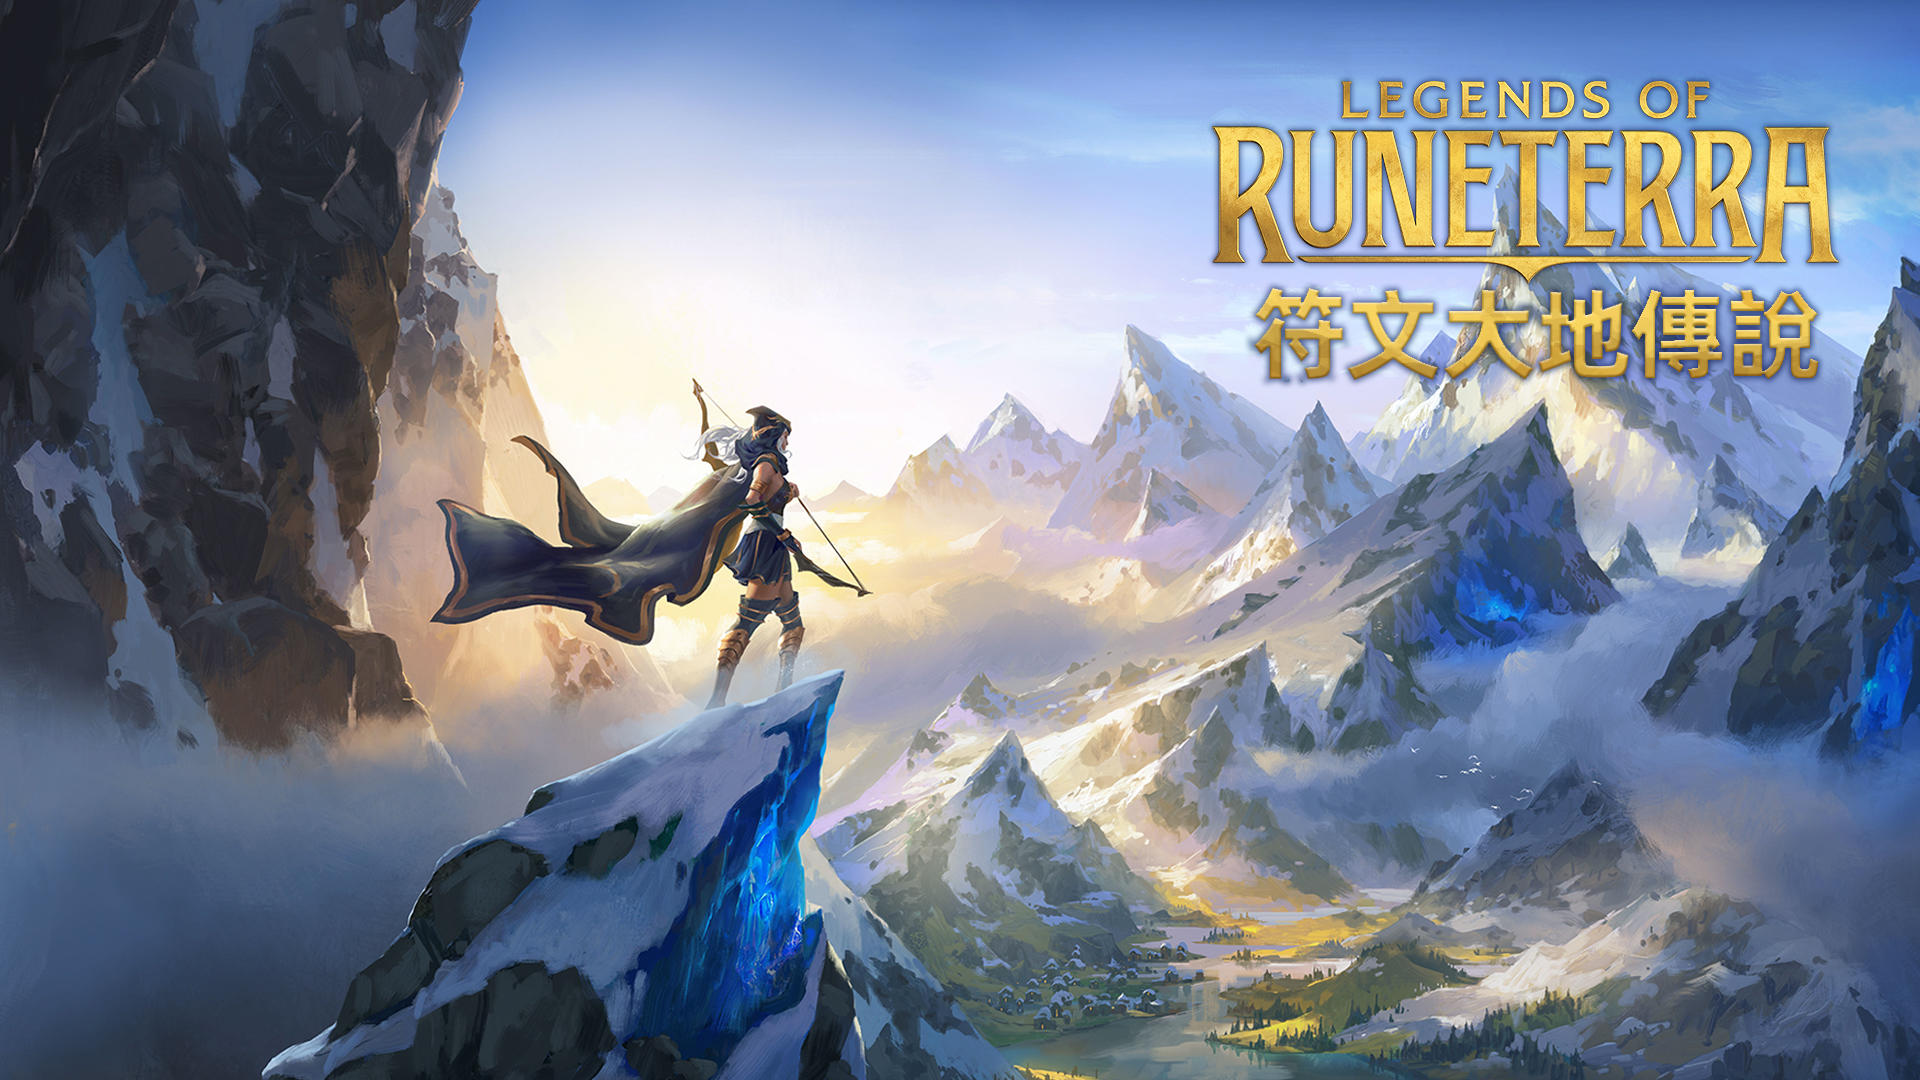 符文大地傳說 | Legends of Runeterra游戏截图